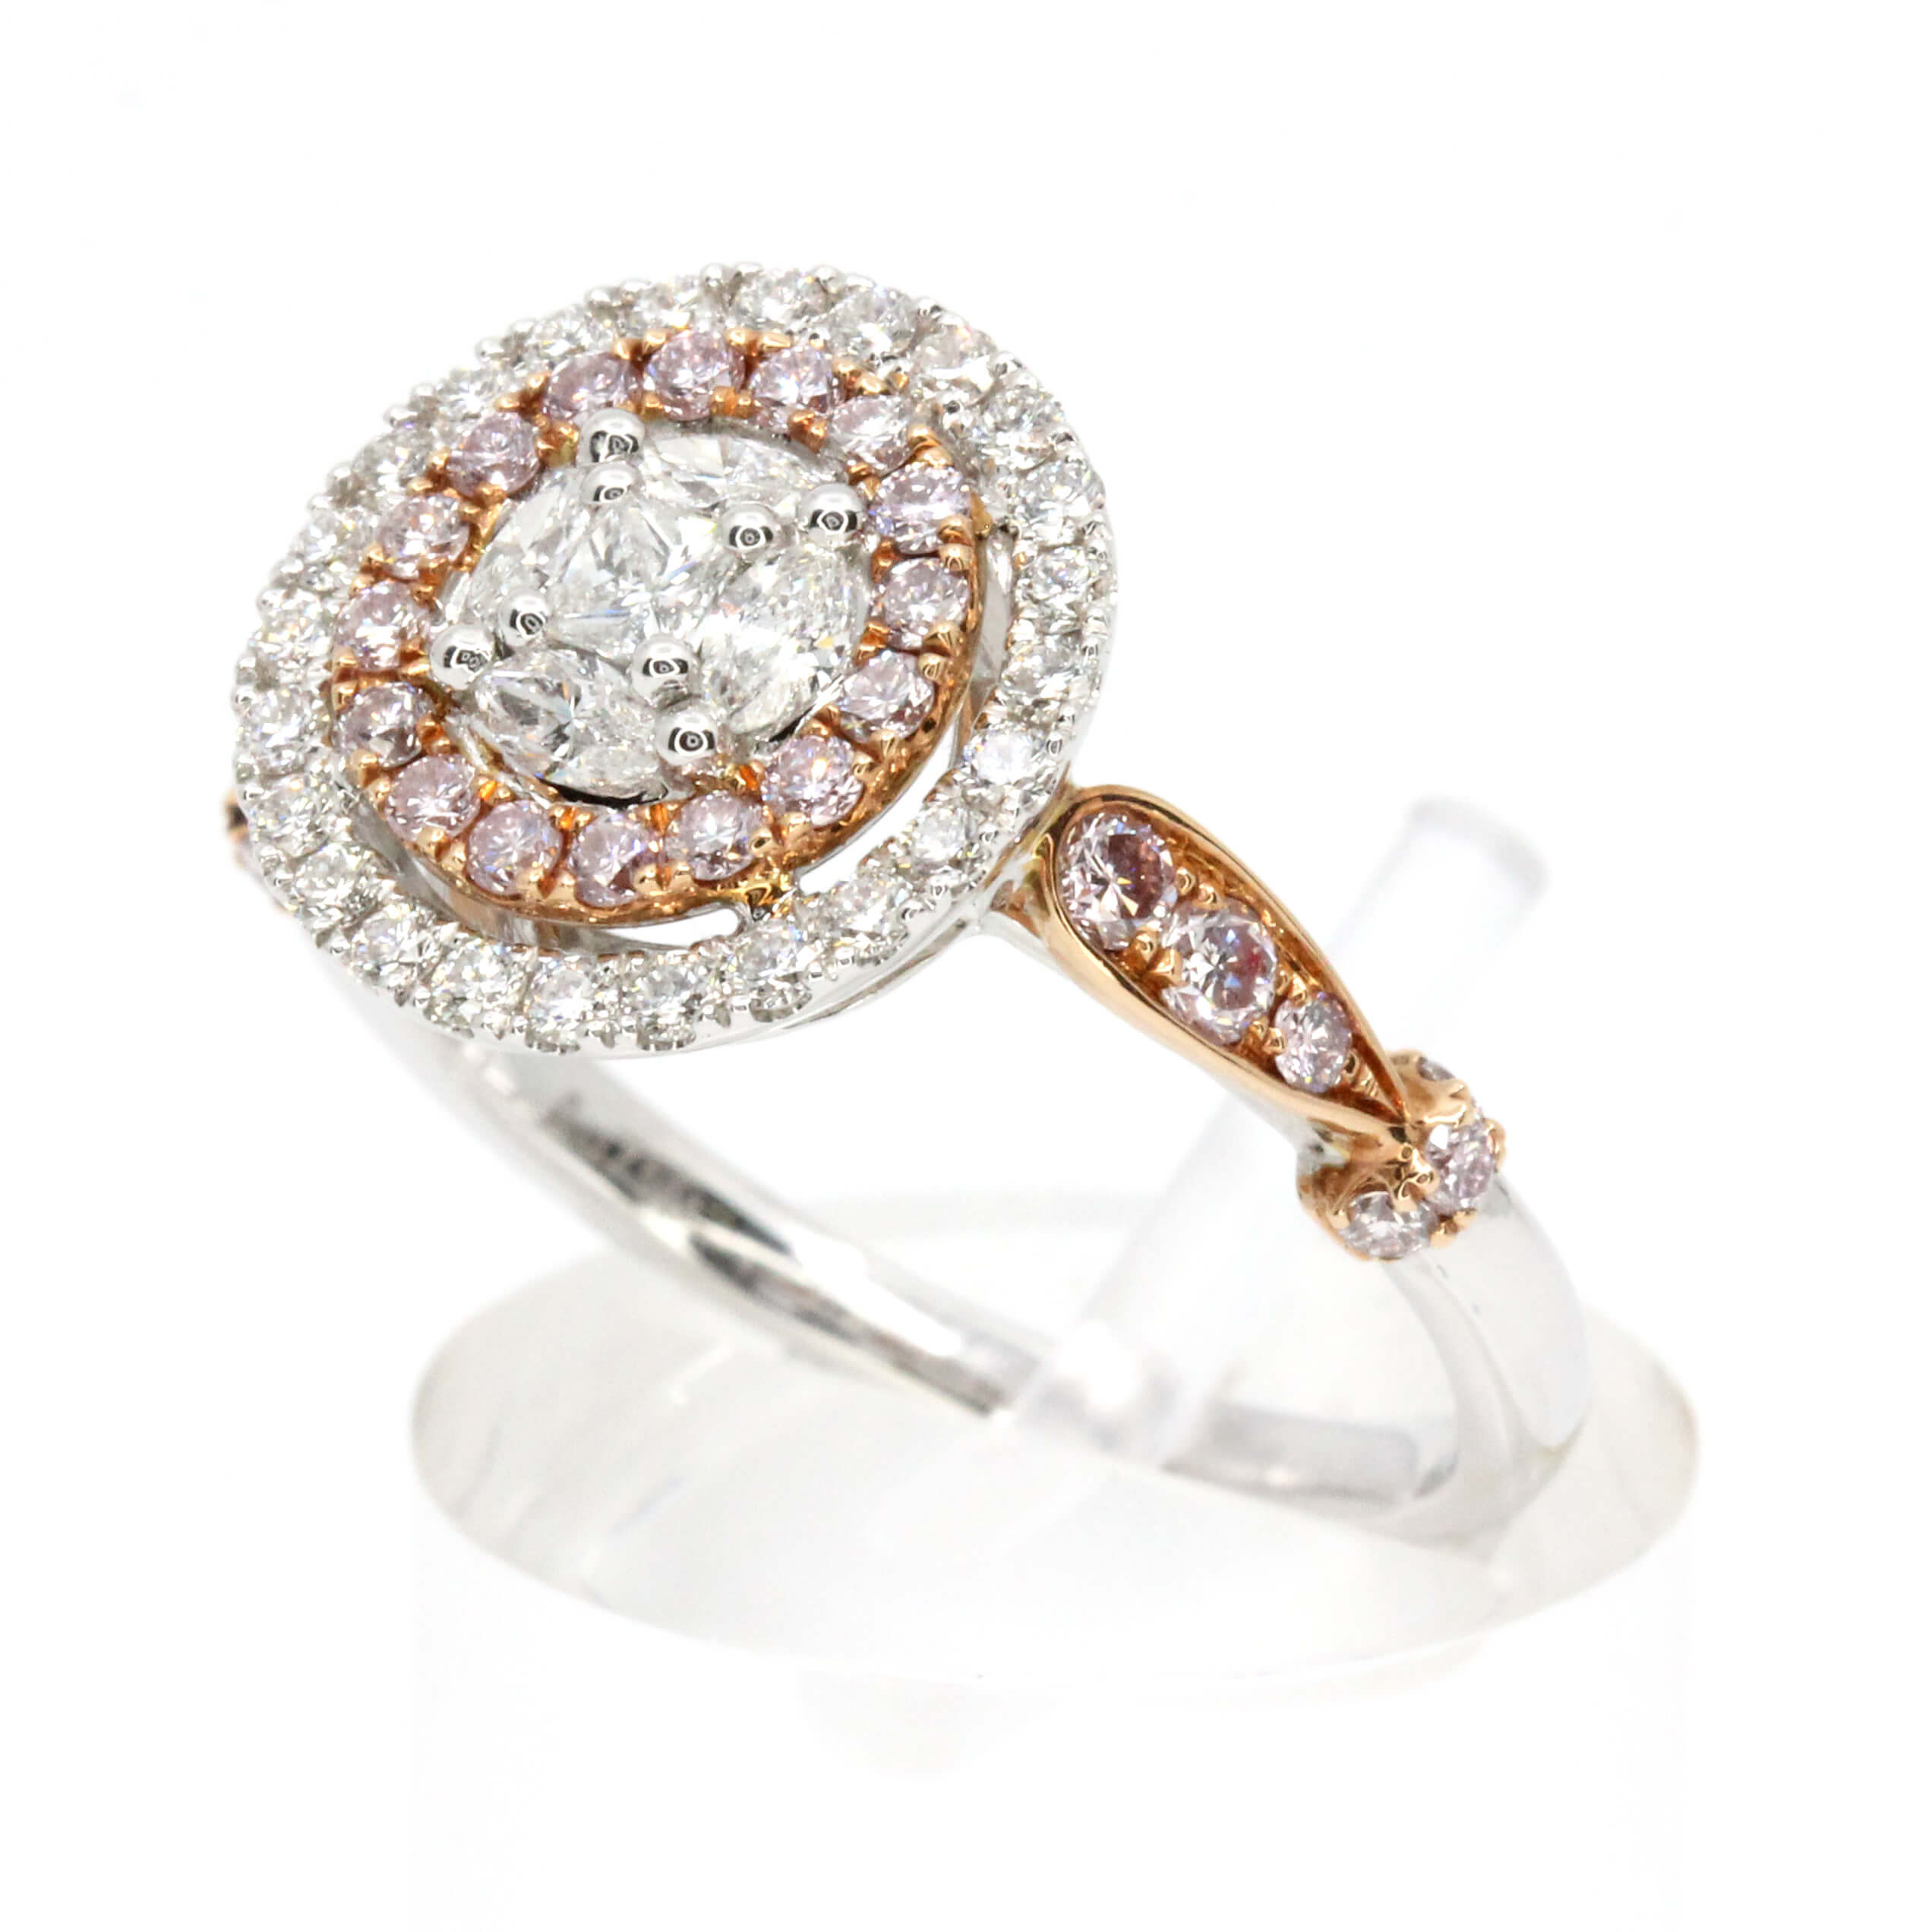 White & Pink Diamond Ring set in 18ct White/Rose Gold